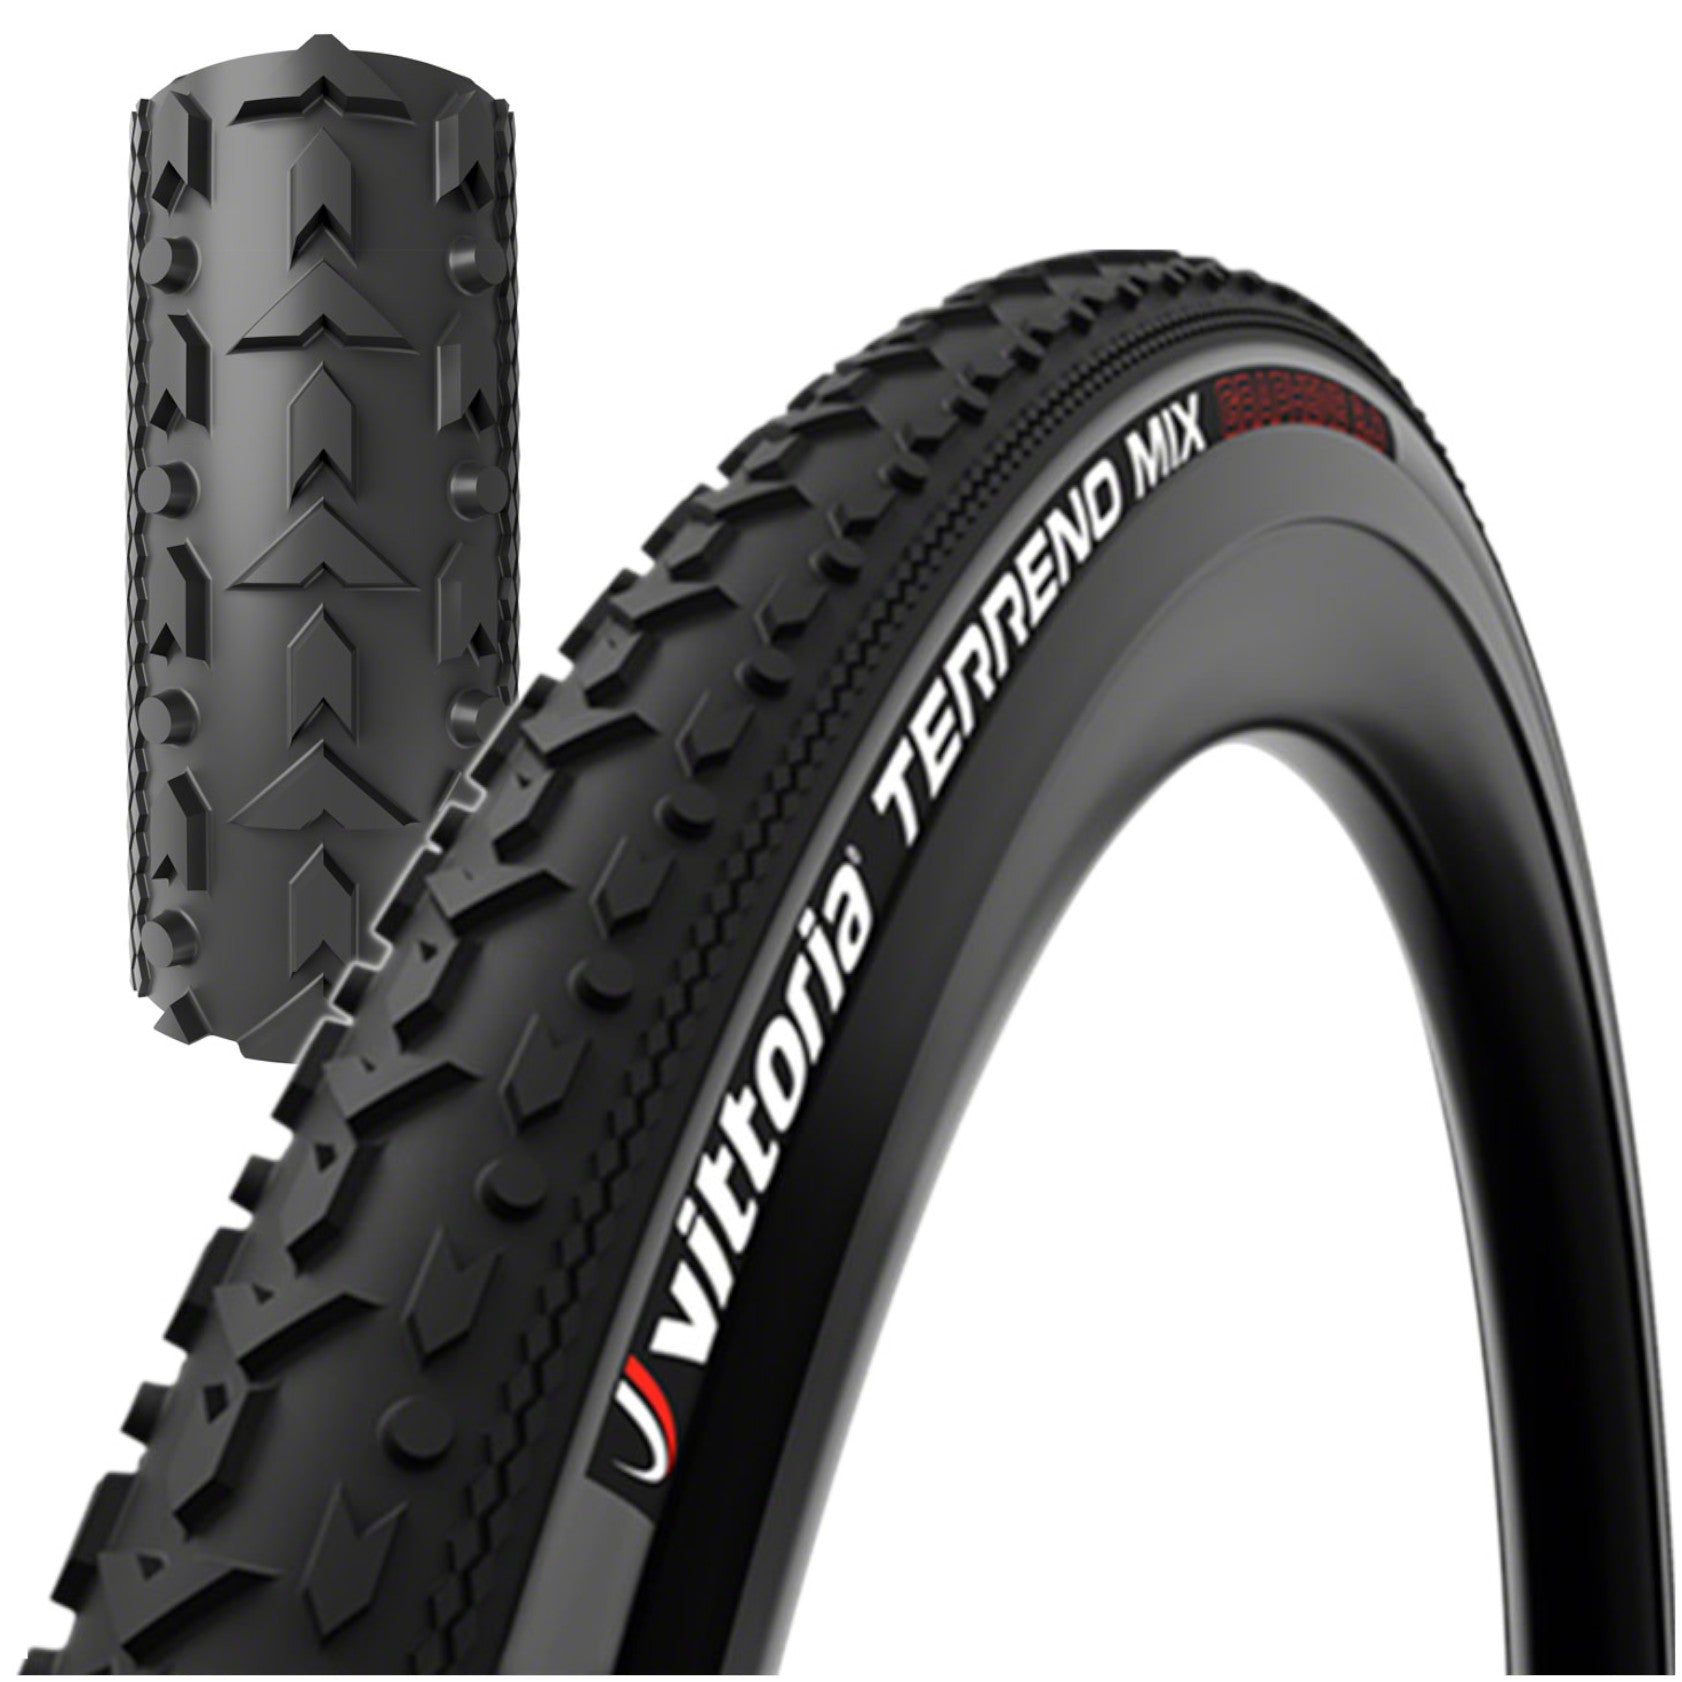 Vittoria Terreno Mix G2.0 700c Tubeless Tire - The Bikesmiths